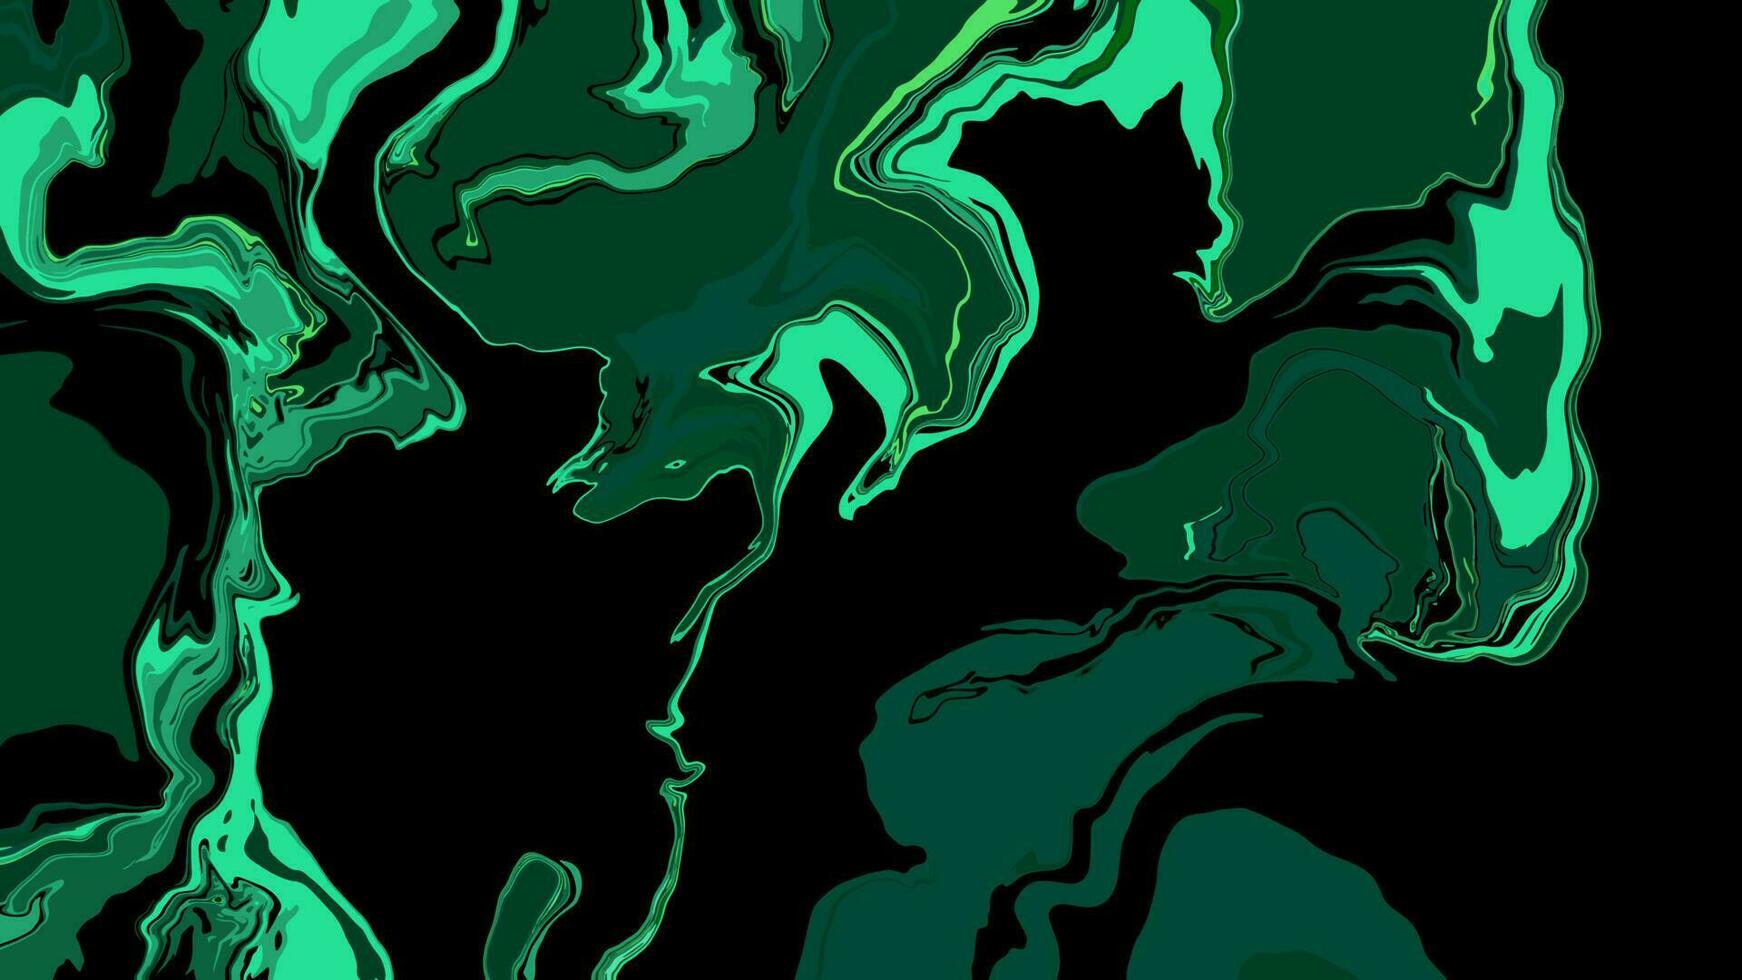 bakgrund med marmor textur. abstrakt målning blanda fläckar. grön och svart flytande måla den där flöden. vektor